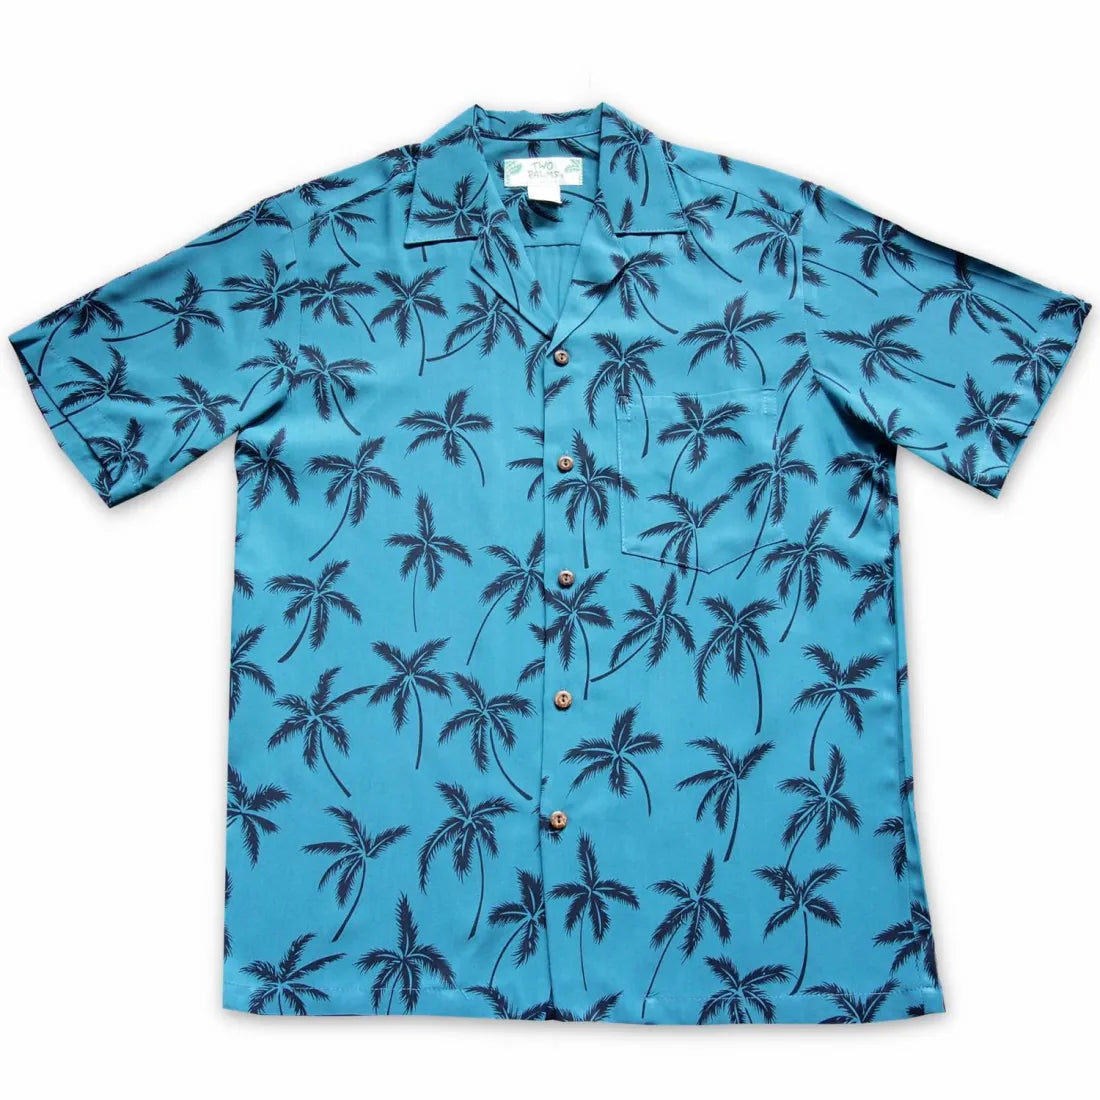 Balmy Blue Hawaiian Rayon Shirt - Made In Hawaii